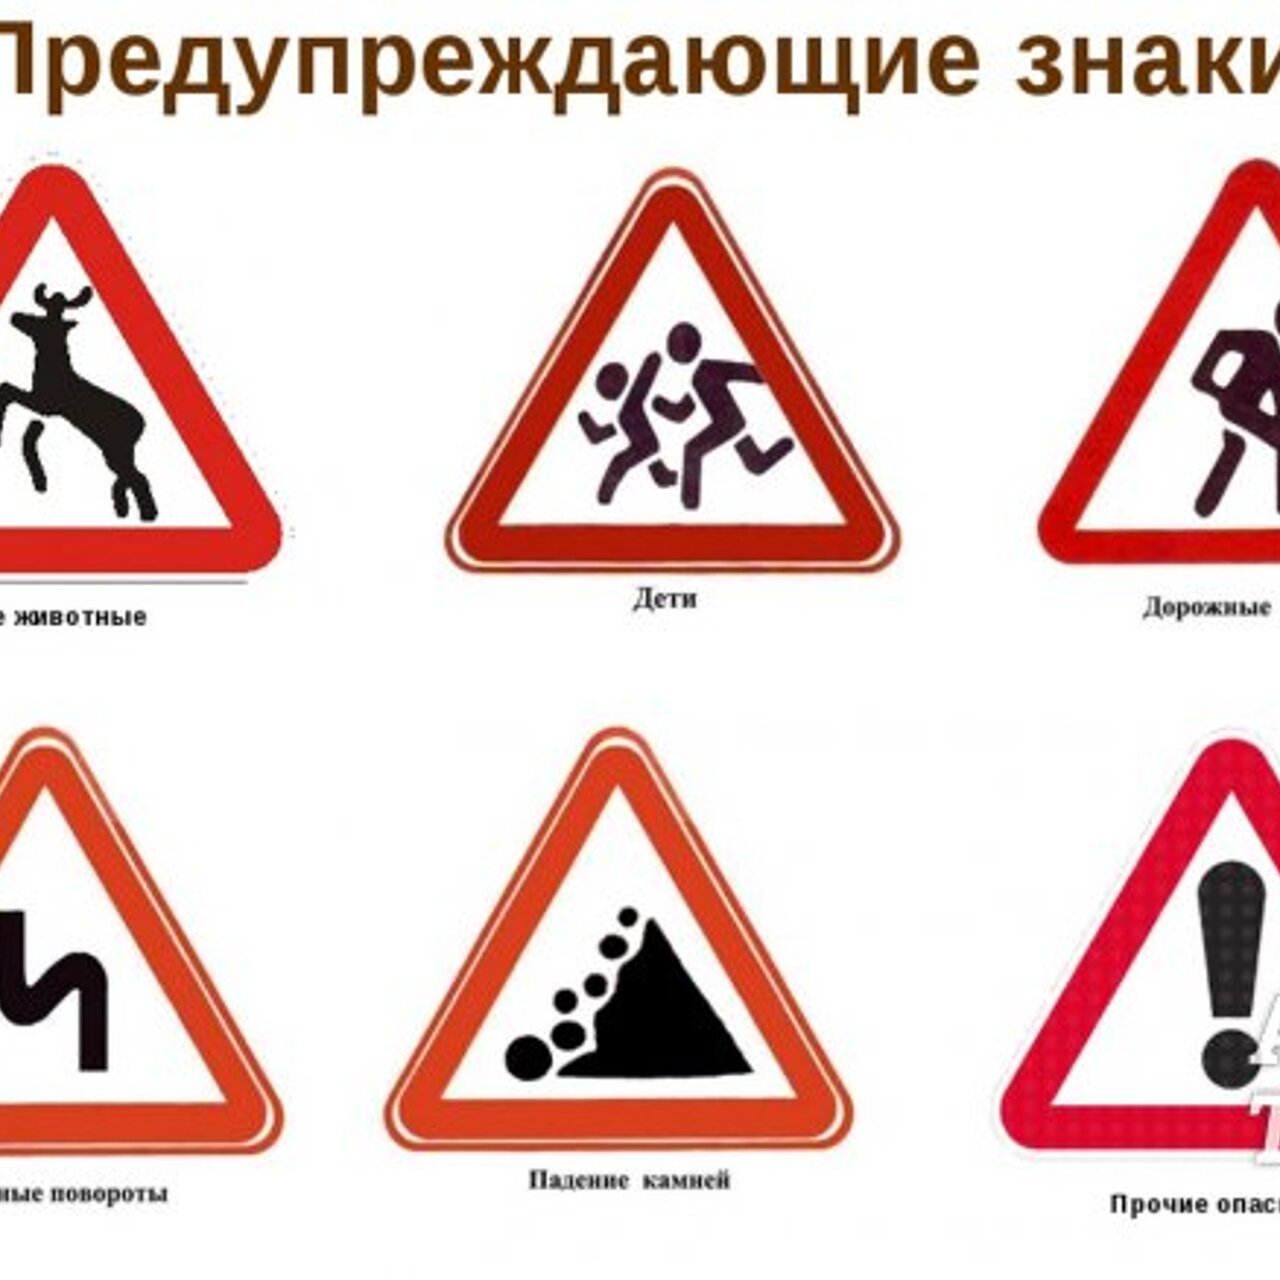 Дорожные знаки 34. Дорожники знаки. Предупреждающие знаки. Предупреждающие знаки дорожного движения. Предупреждающие дорожные знаки для детей.